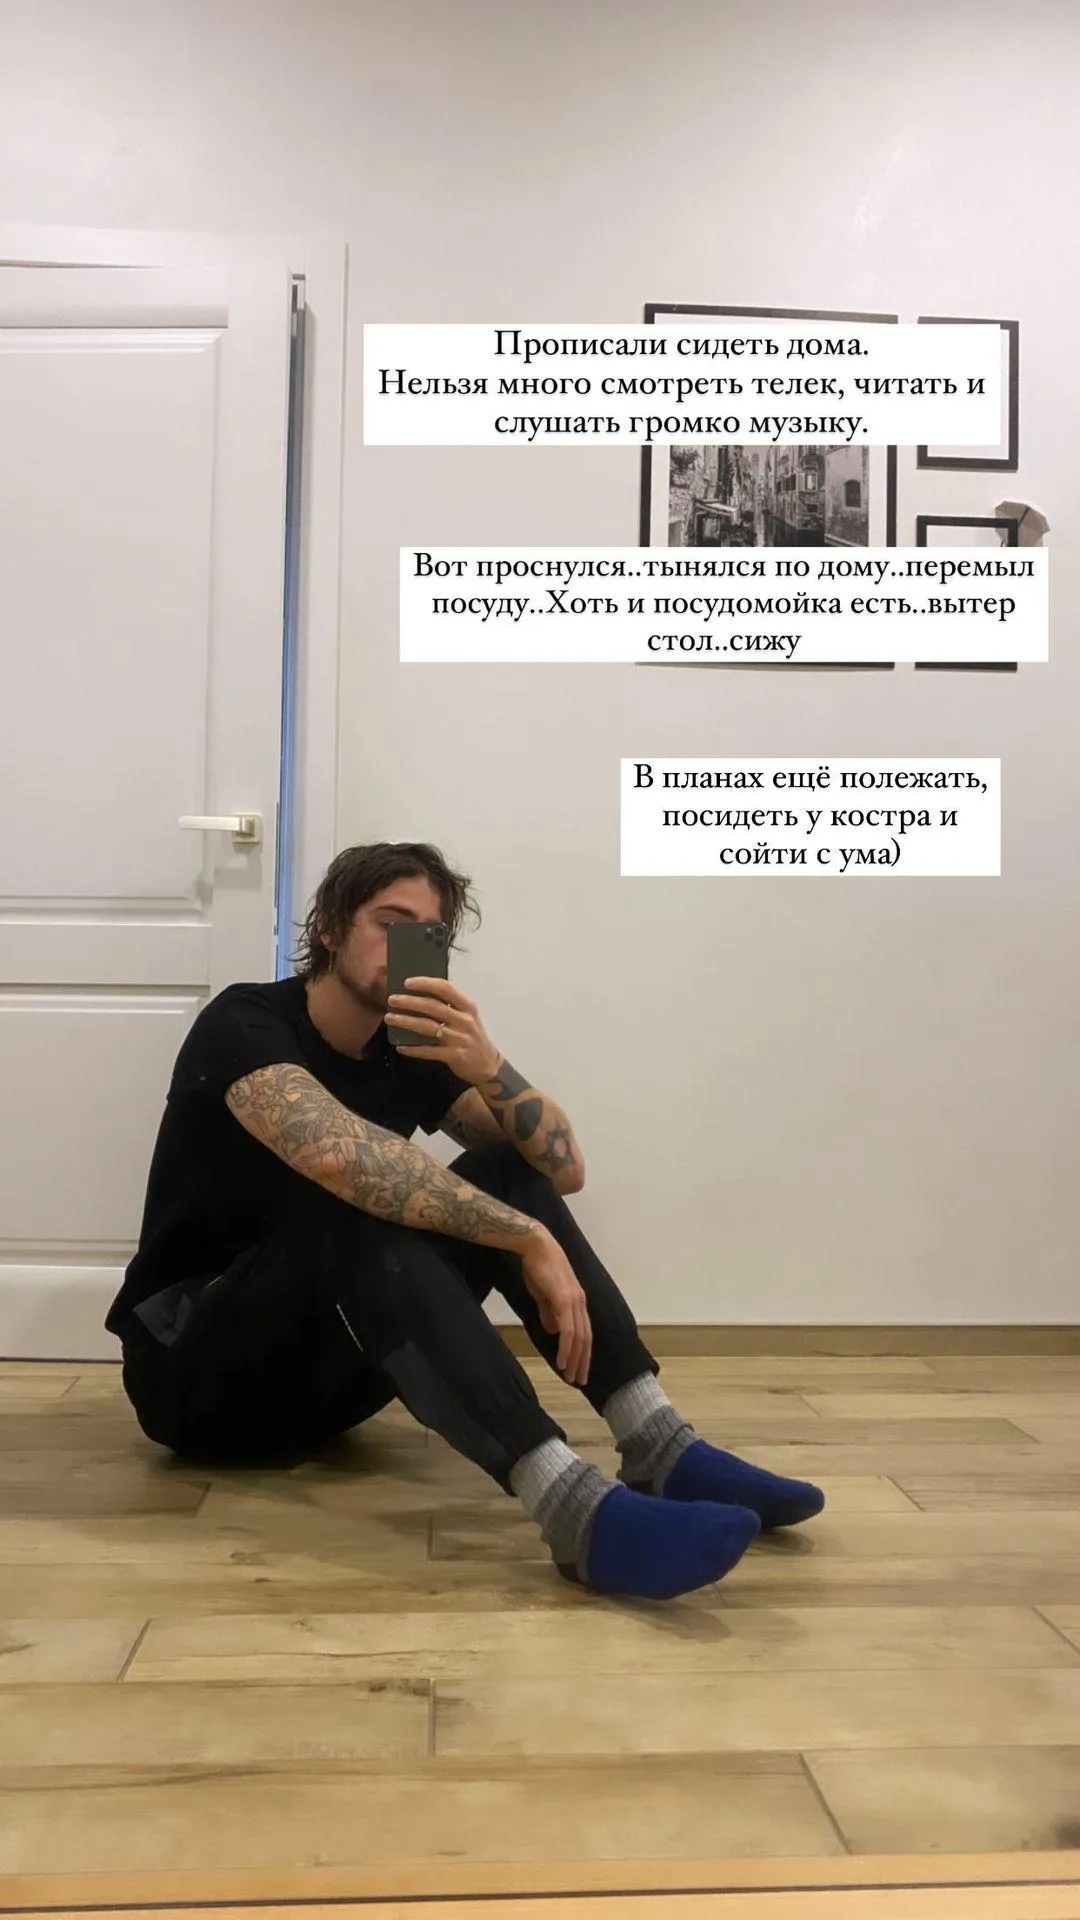 Володимир Дантес після струсу мозку